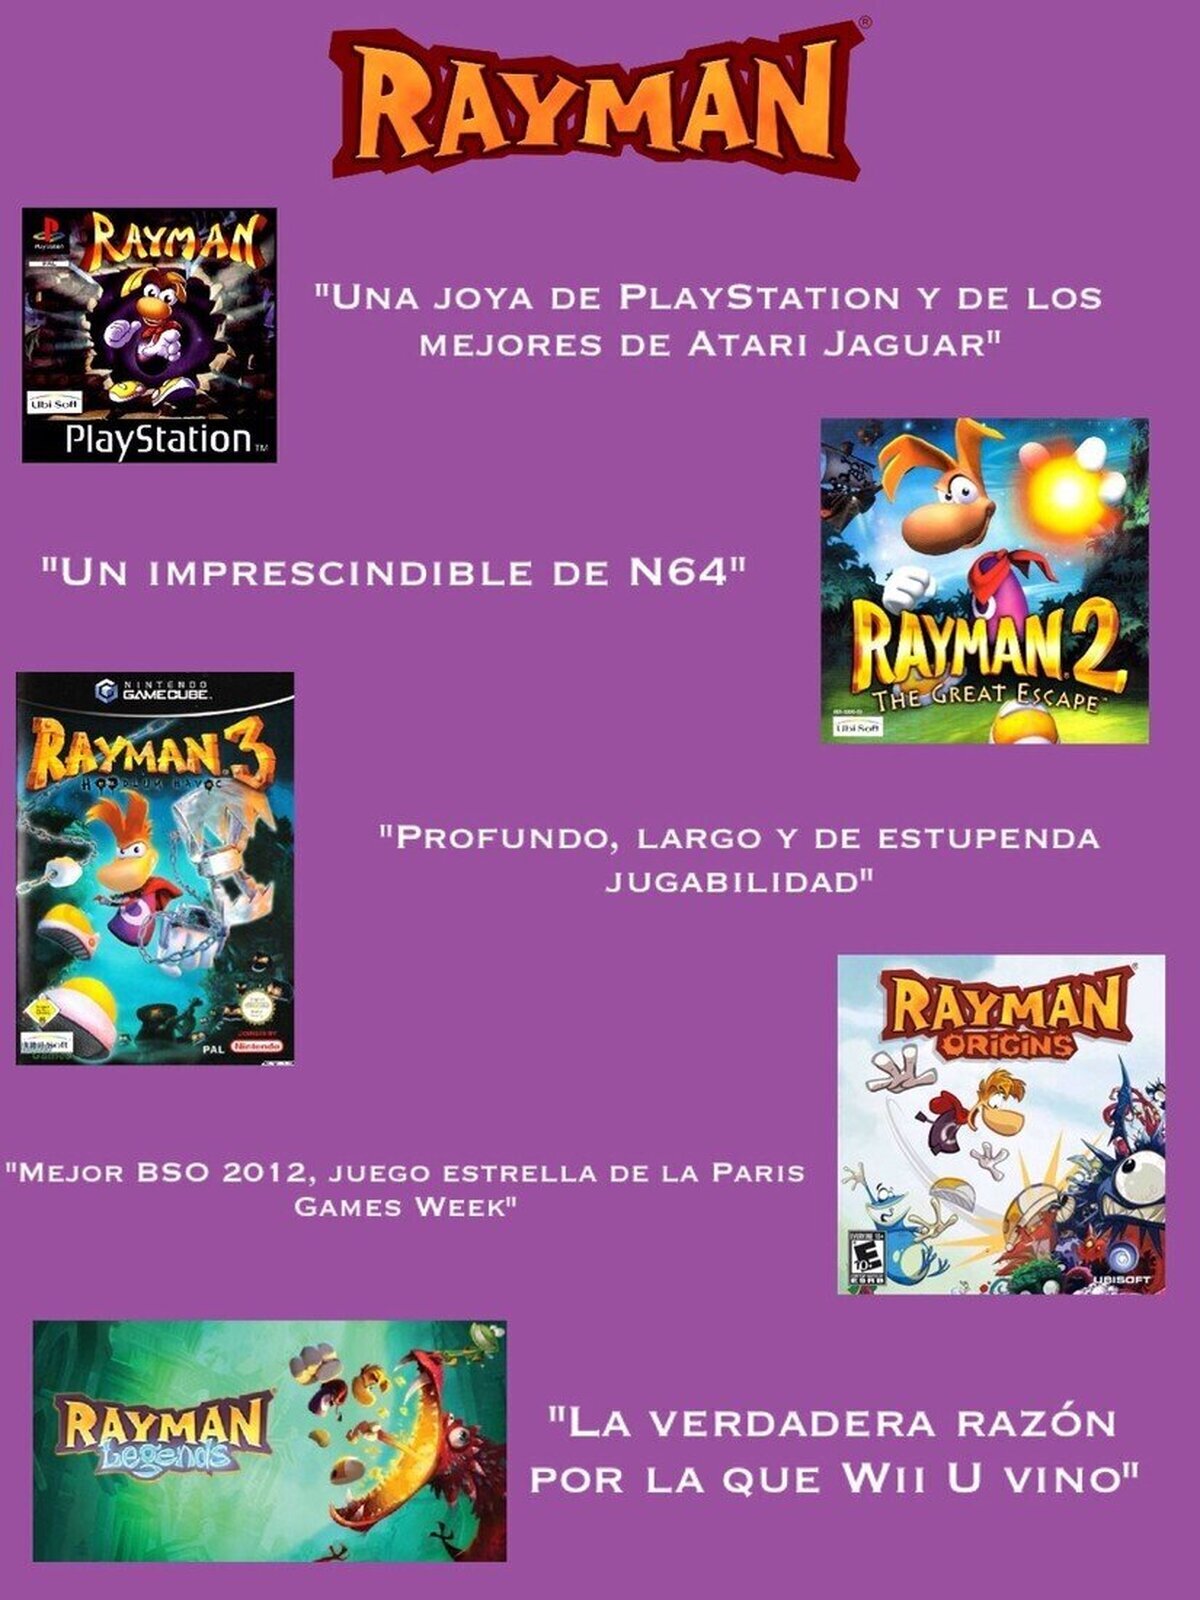 Rayman, leyenda desde sus inicios